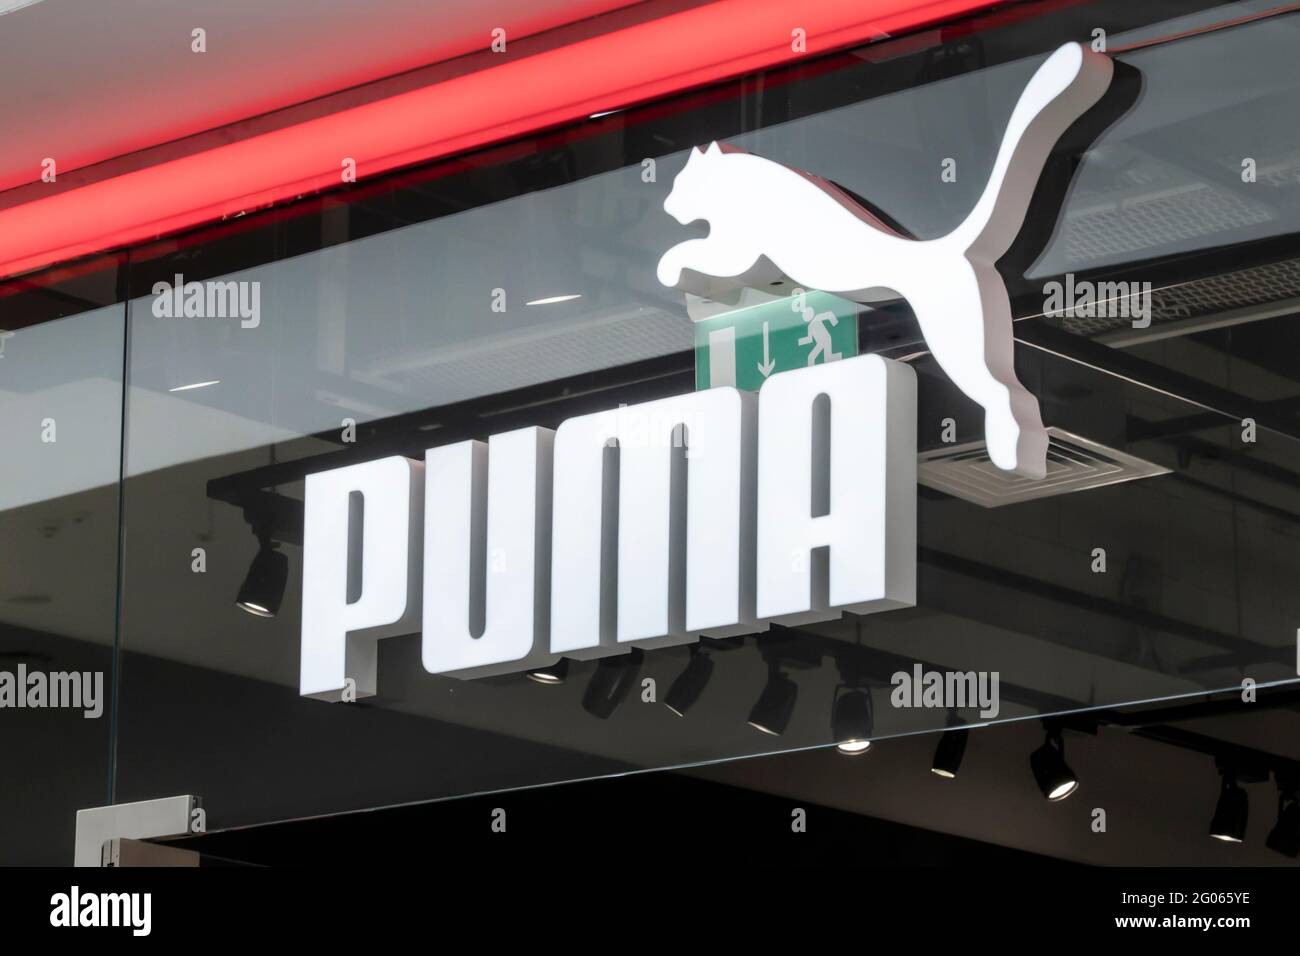 el logotipo de la marca puma, un cartel sobre entrada a la tienda de la marca alemana para la producción de ropa deportiva y accesorios. Krasnoyarsk, Rusia Fotografía de stock -